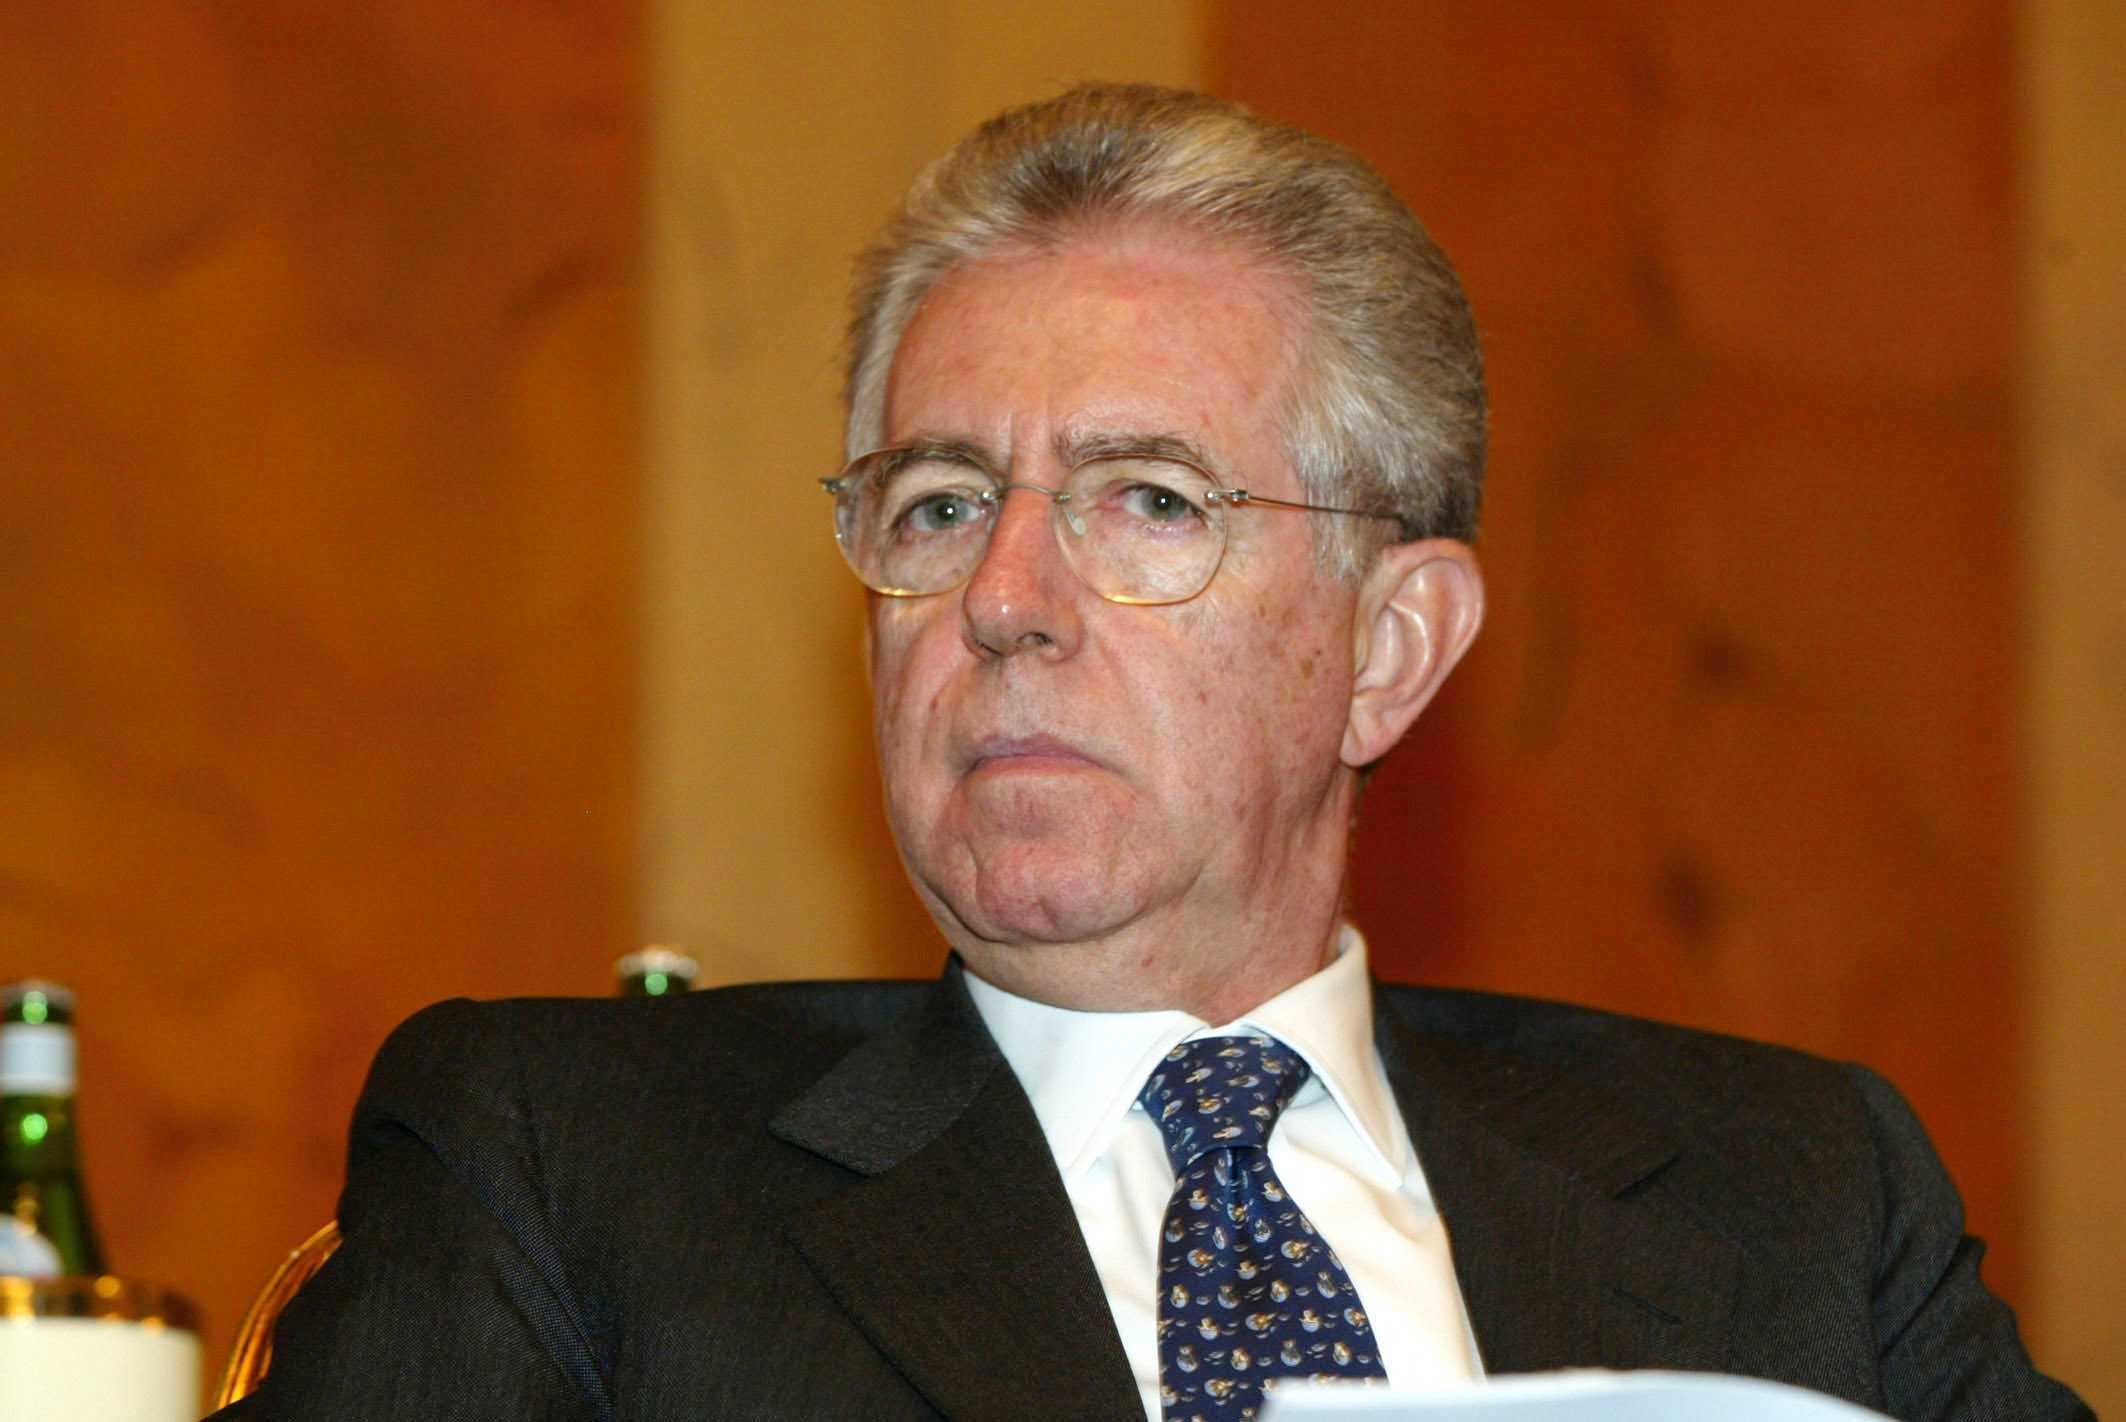 Monti: "Evasione fiscale, grosso danno"